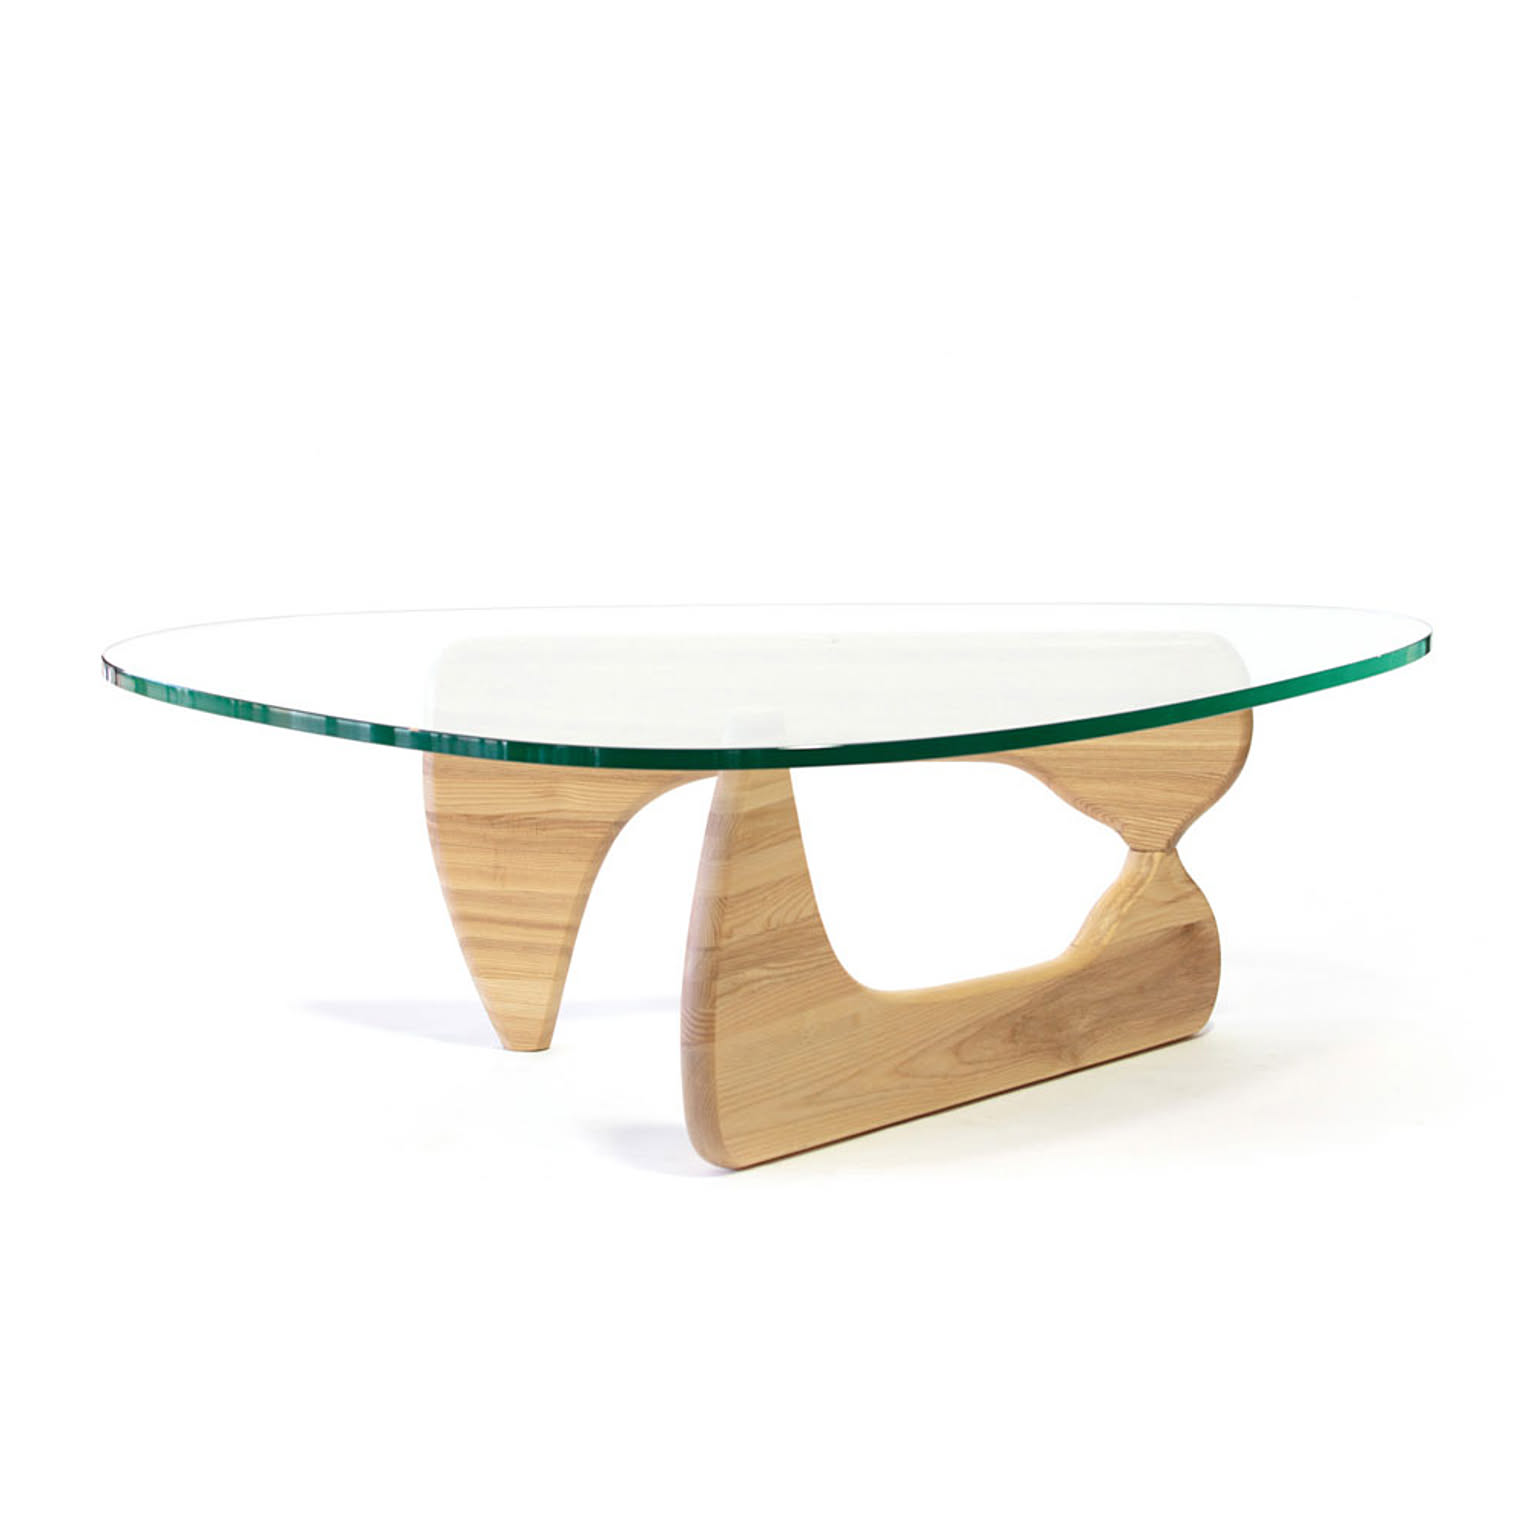 ノグチテーブル ガラステーブル ローテーブル センターテーブル ノグチイサムデザイン おしゃれテーブル デザイナーズ